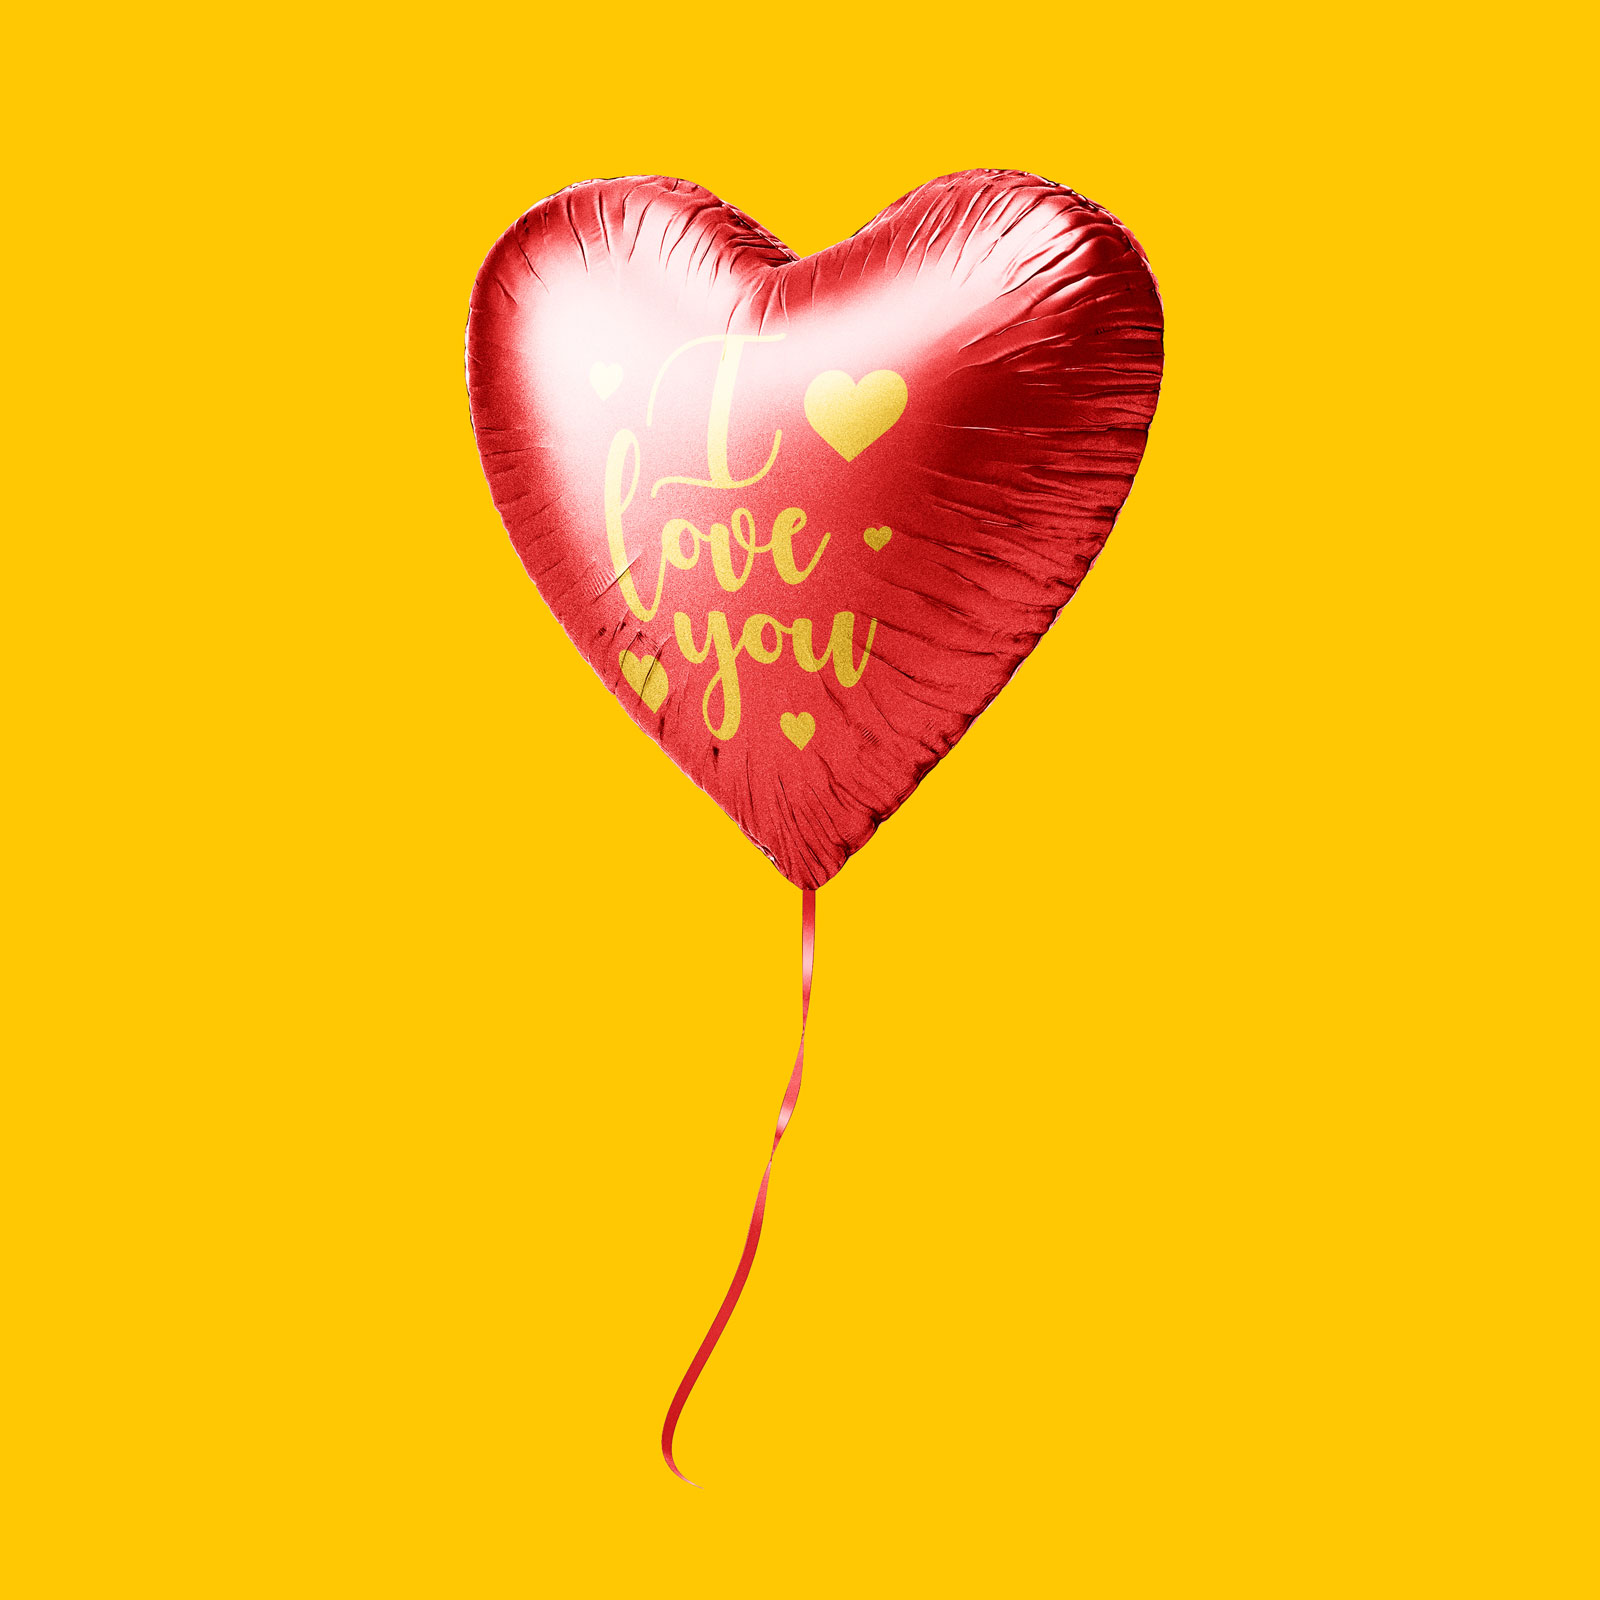 Сердечный шарический макет установлен на День святого Валентина 2020